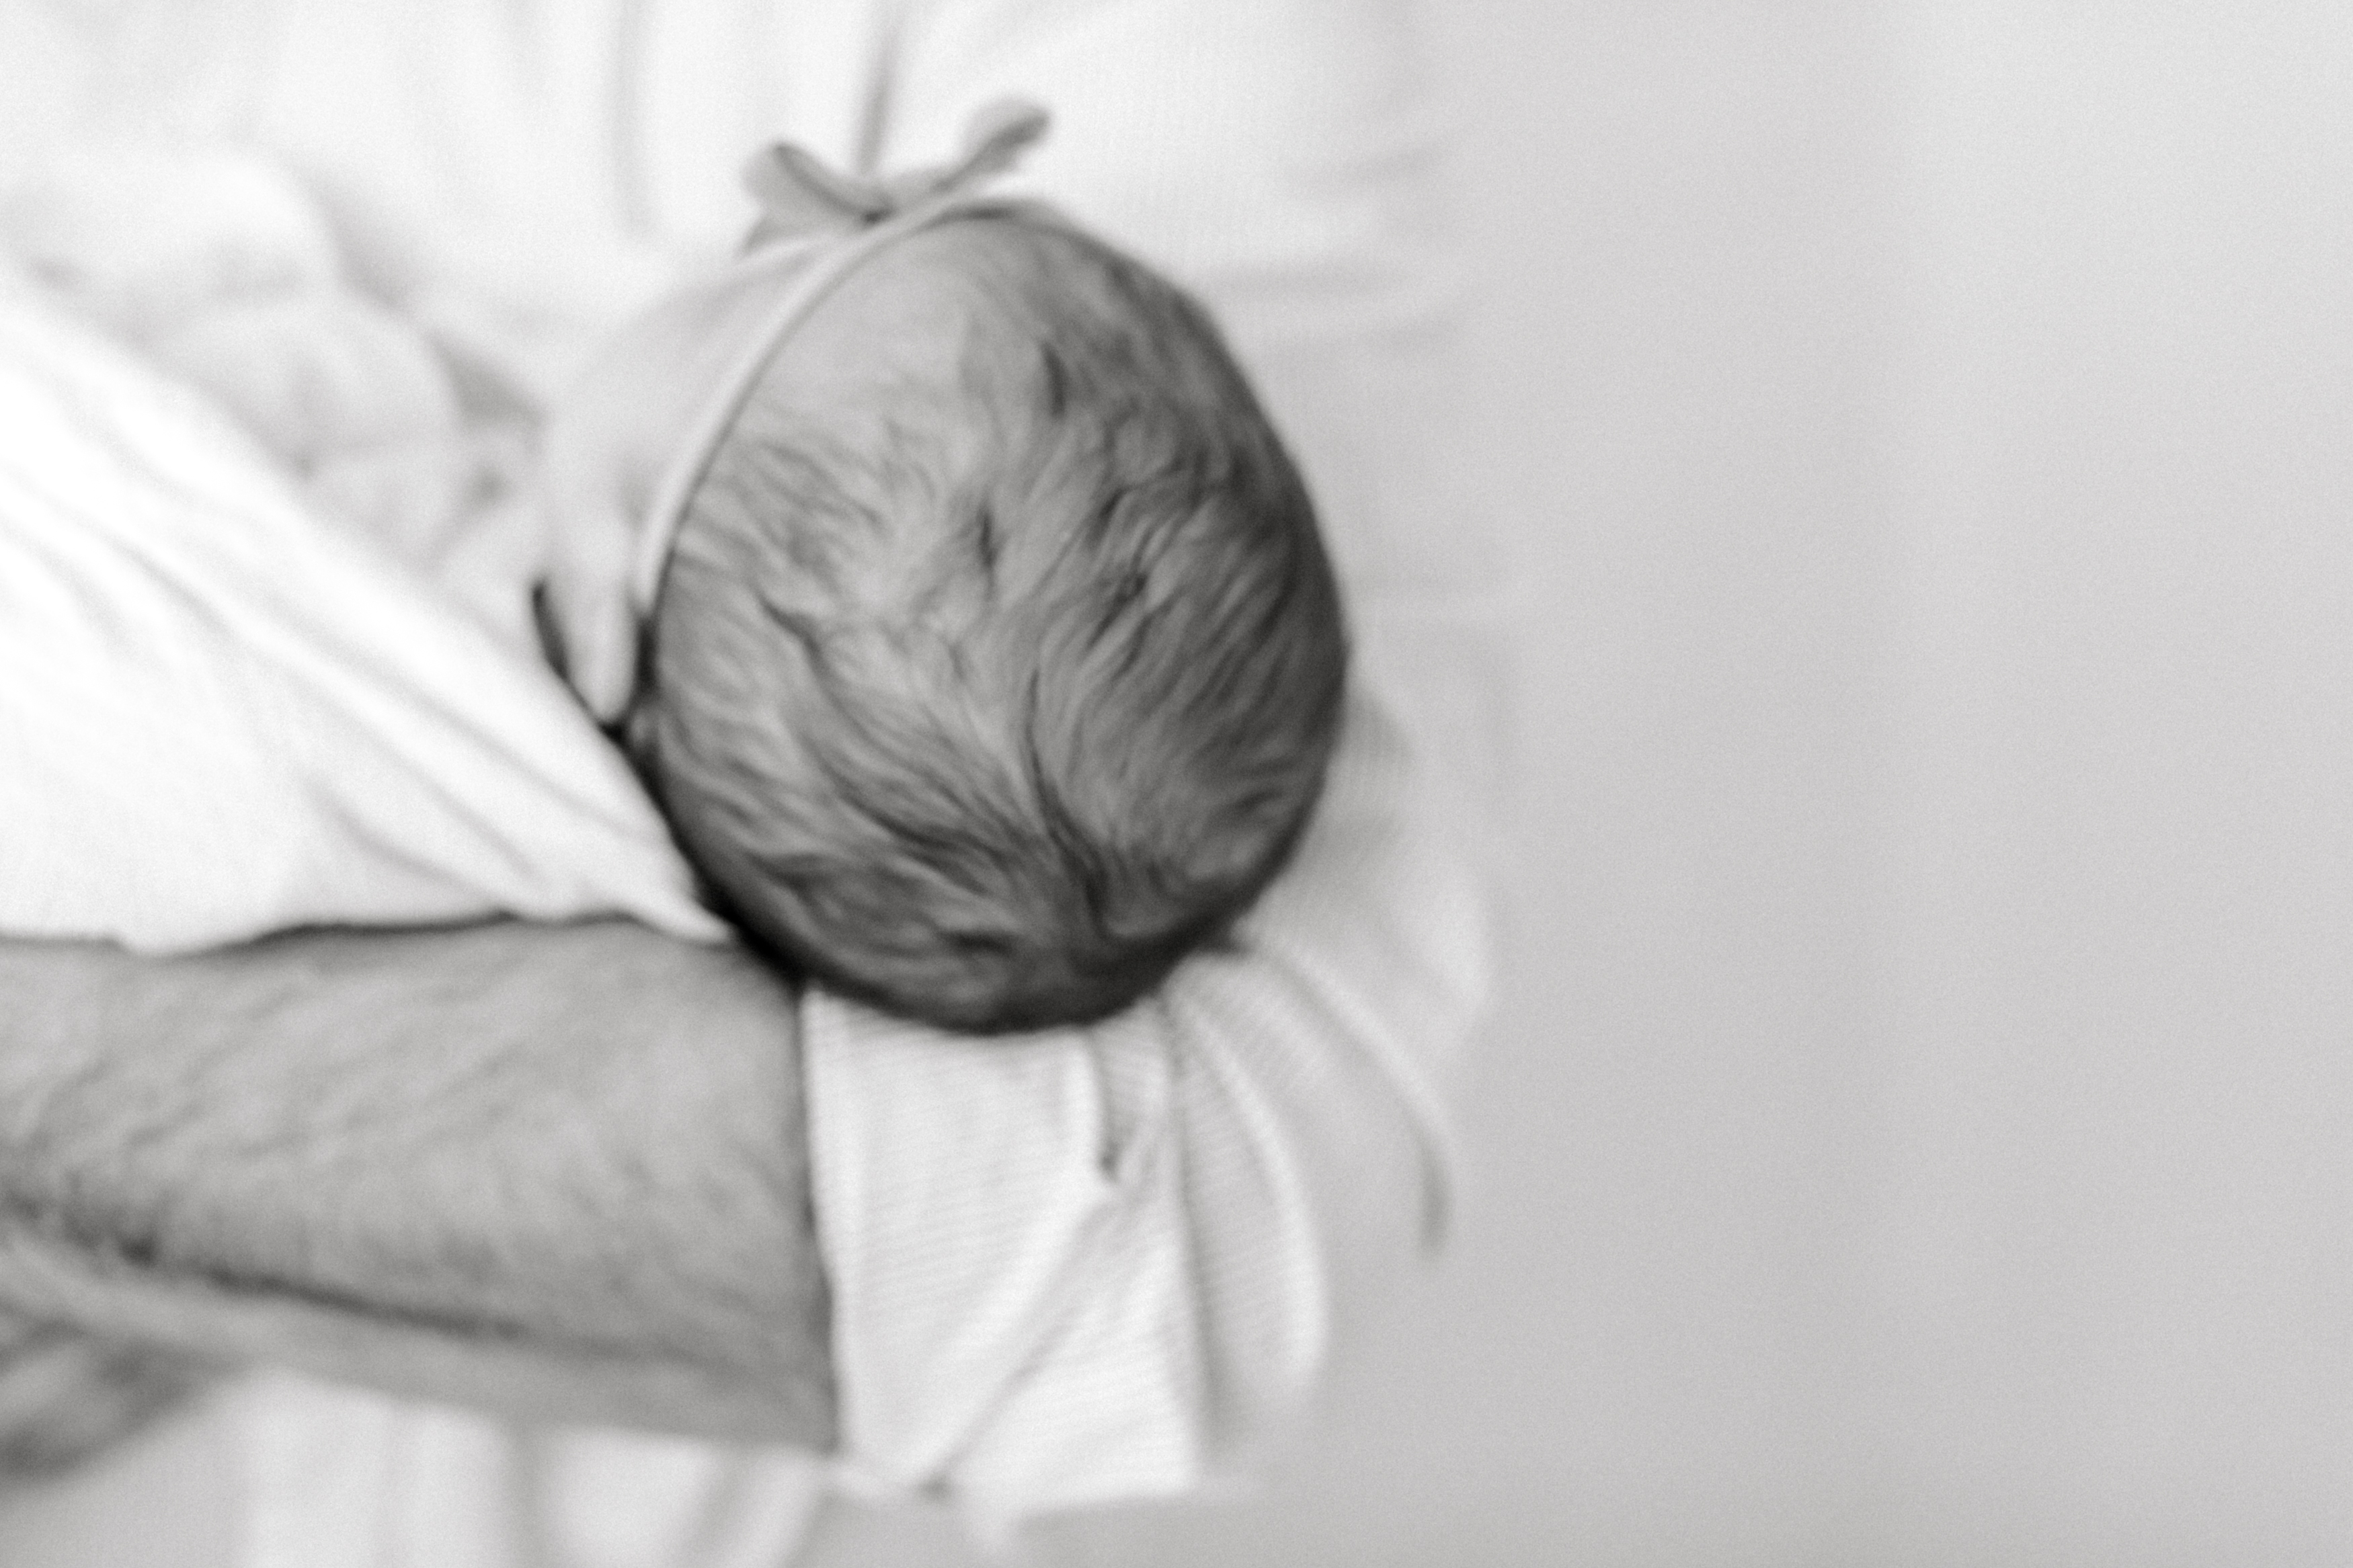 Milwaukee twin newborn photographer